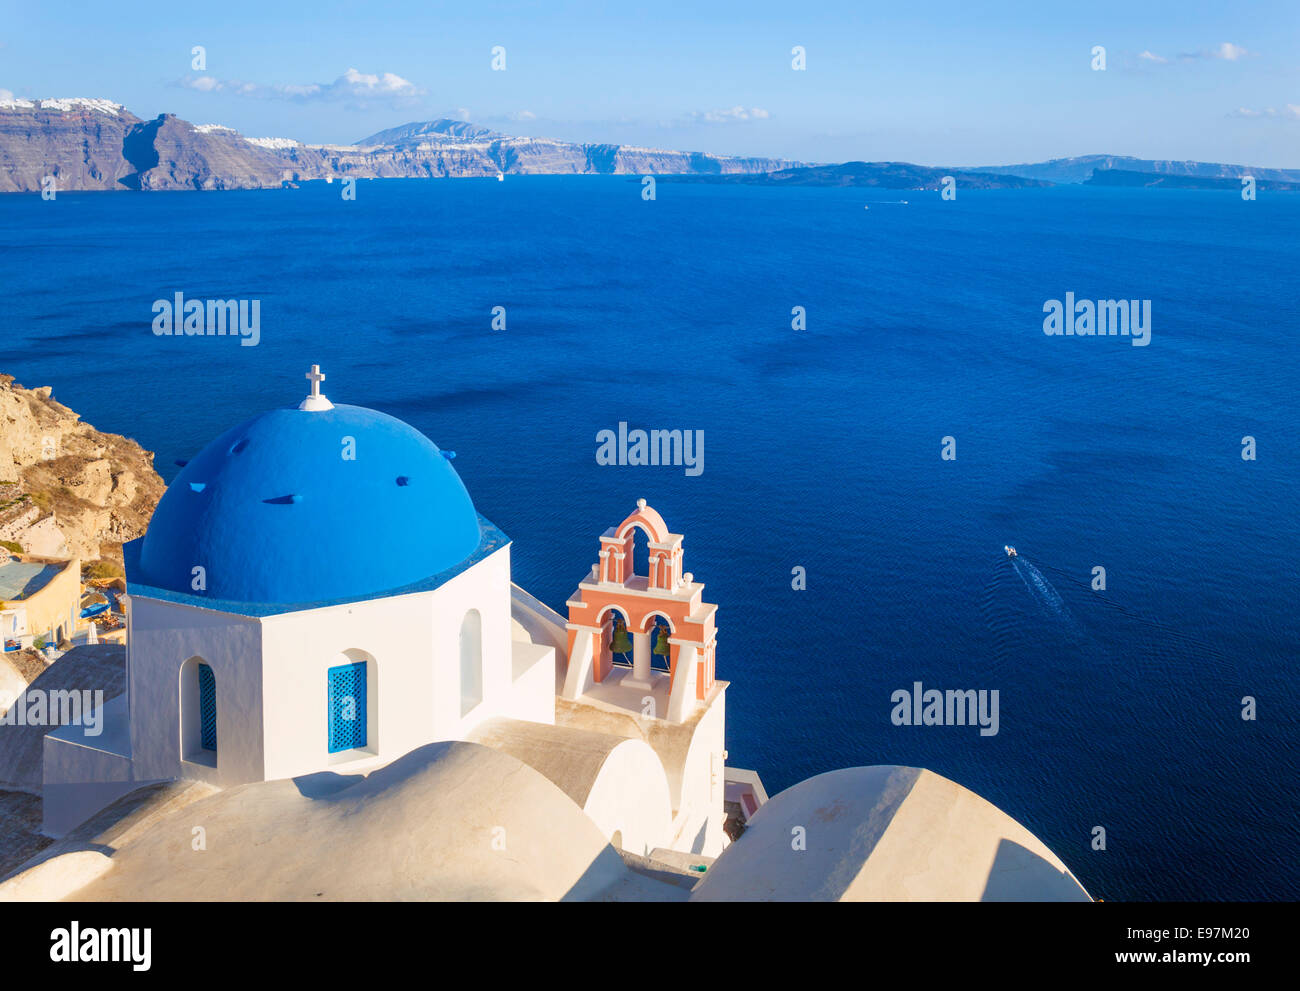 Weiße griechische Kirche mit blauer Kuppel & rosa Glockenturm, Oia, Santorini, Thira, Kykladen, griechische Inseln, Griechenland, EU, Europa Stockfoto